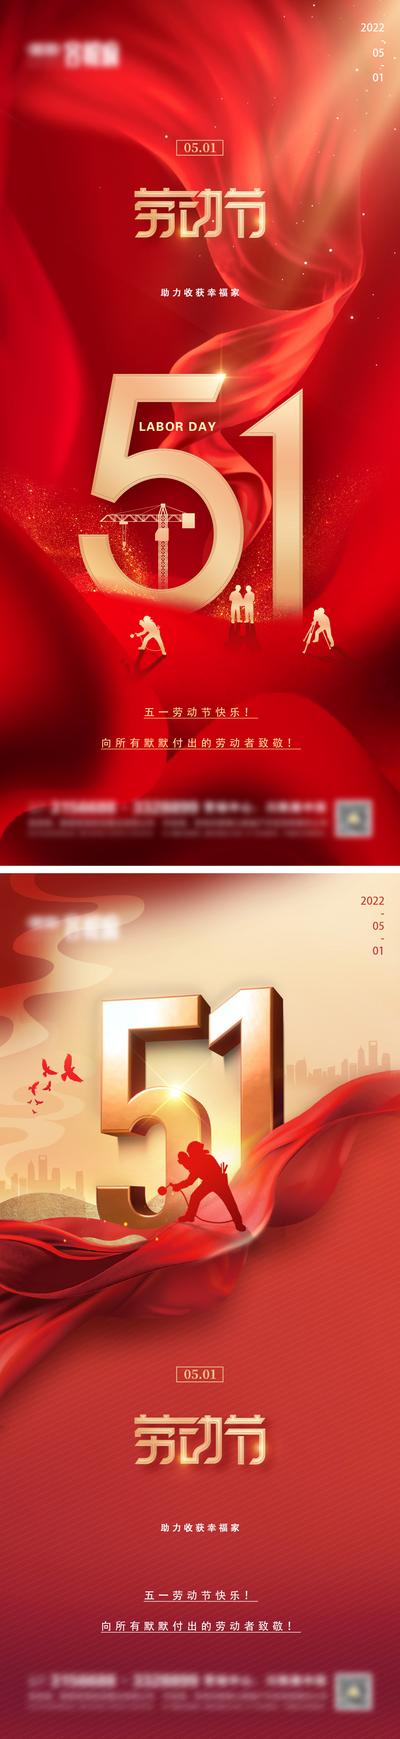 南门网 海报 房地产 公历节日 五一 劳动节 红金 红绸 系列